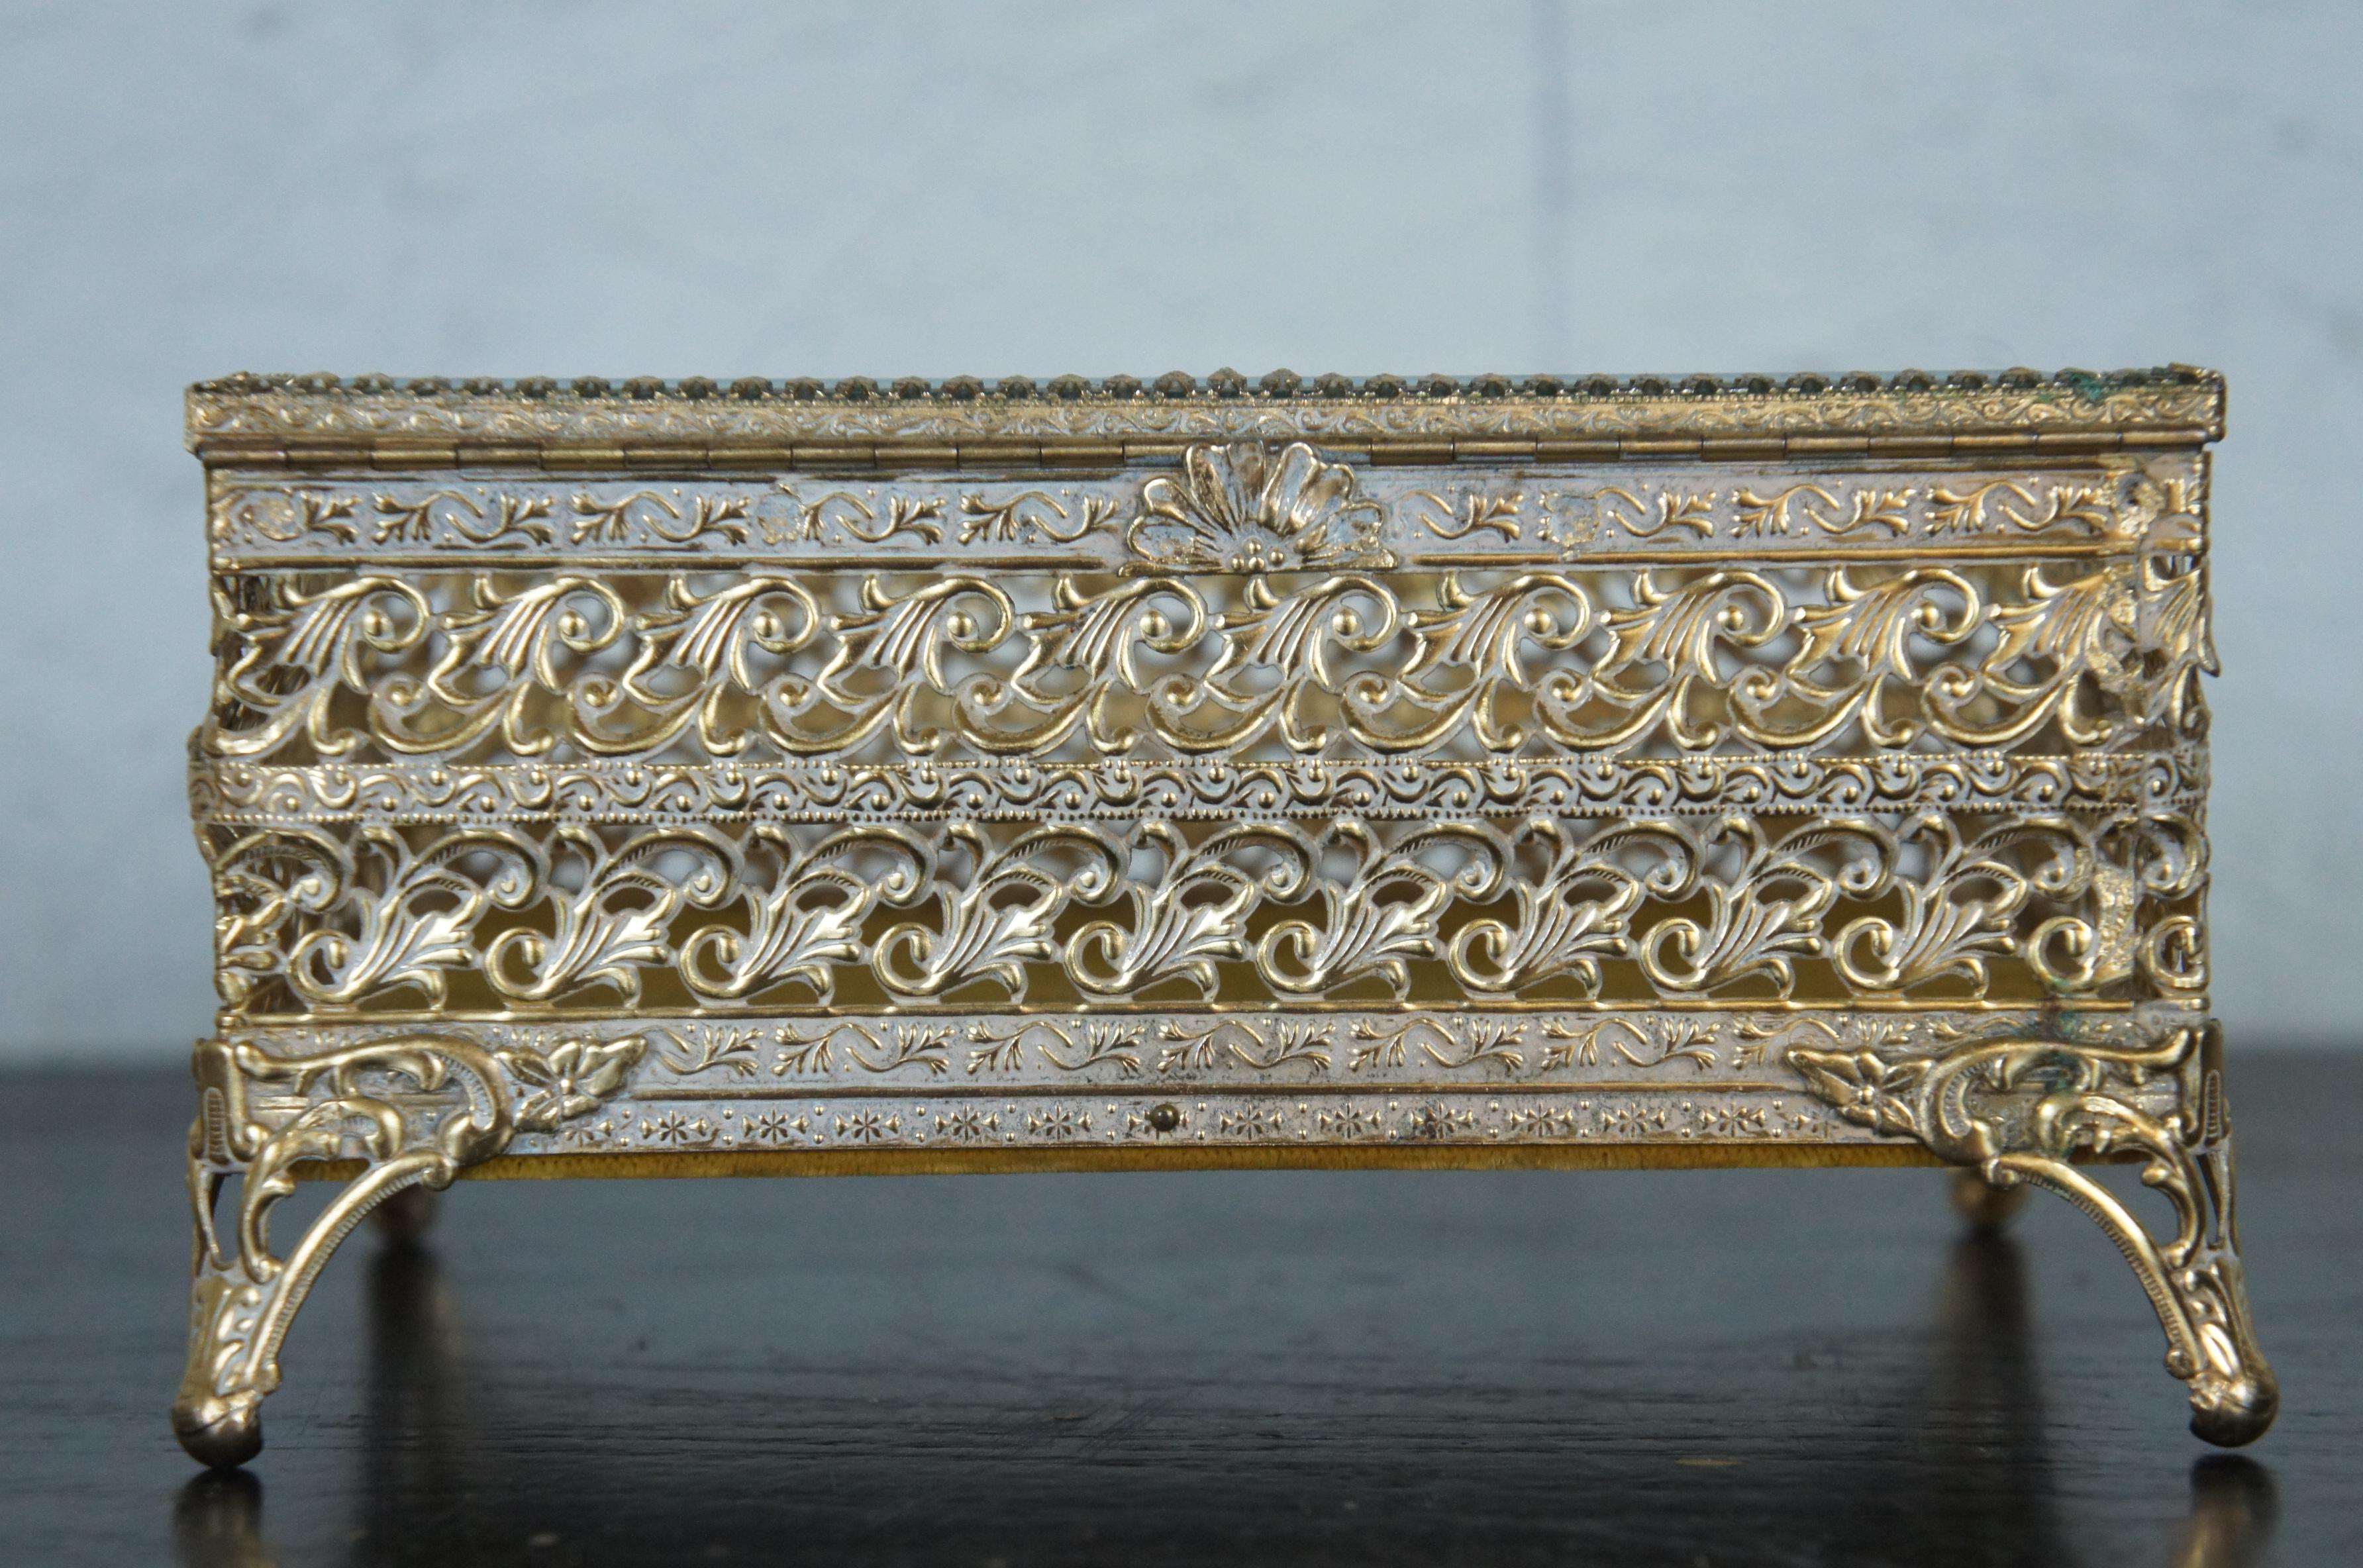 19th Century French Regency Brass Filigree Jewelry Casket Trinket Box with Beveled Glass